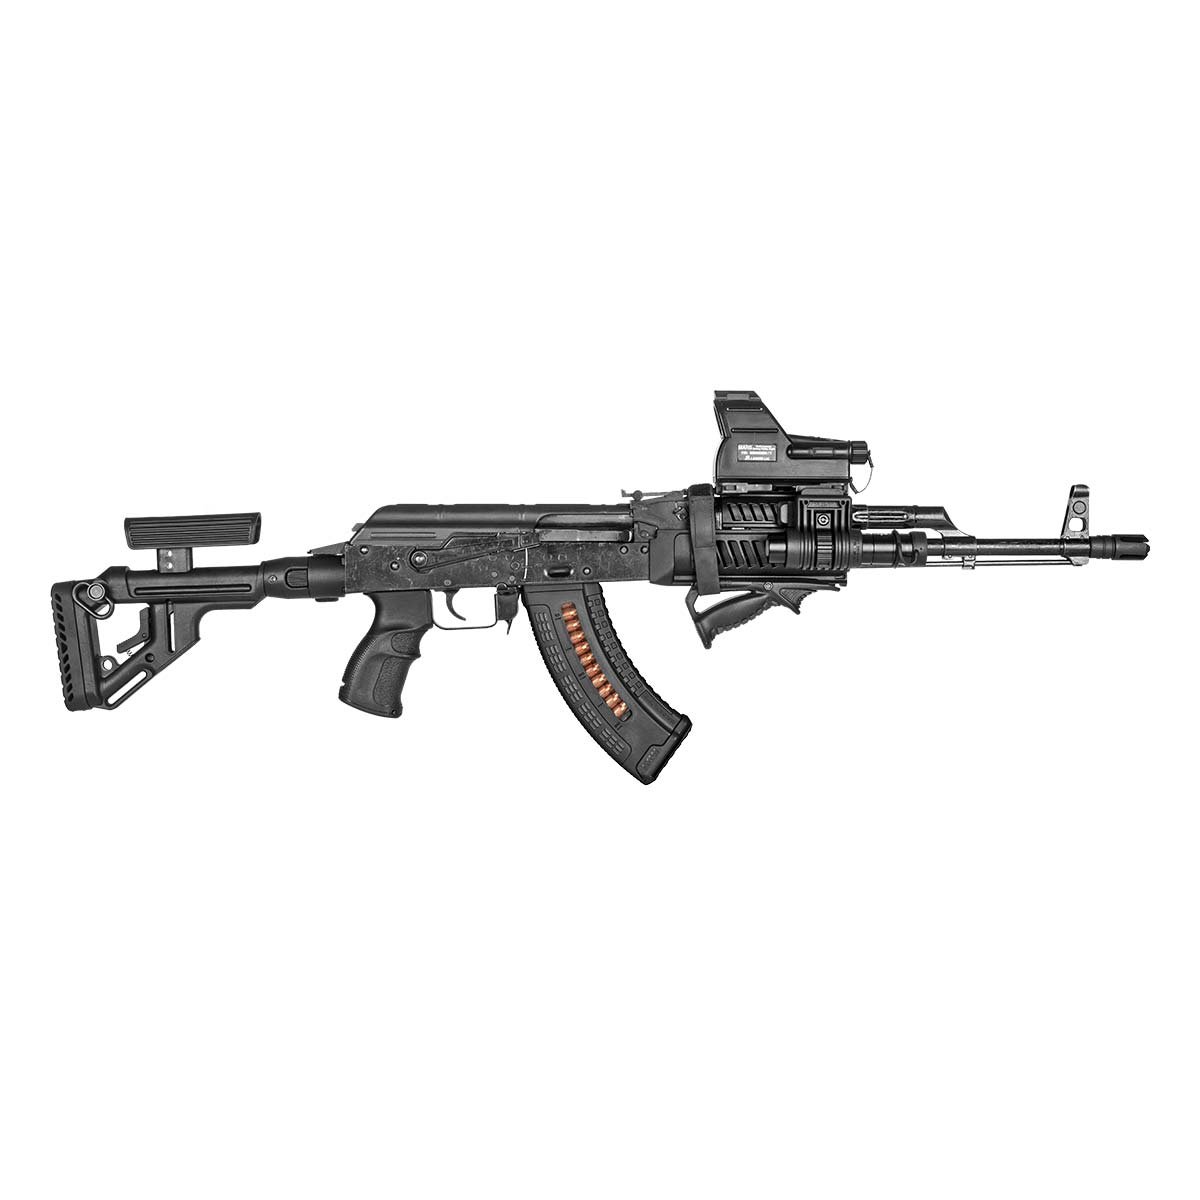 【実物】FAB AK 47 / 74 UAS-AKP Tactical Folding stock フォールディング ストック チークピース 付き / 検索 LCT GHK ロシア E&L RS